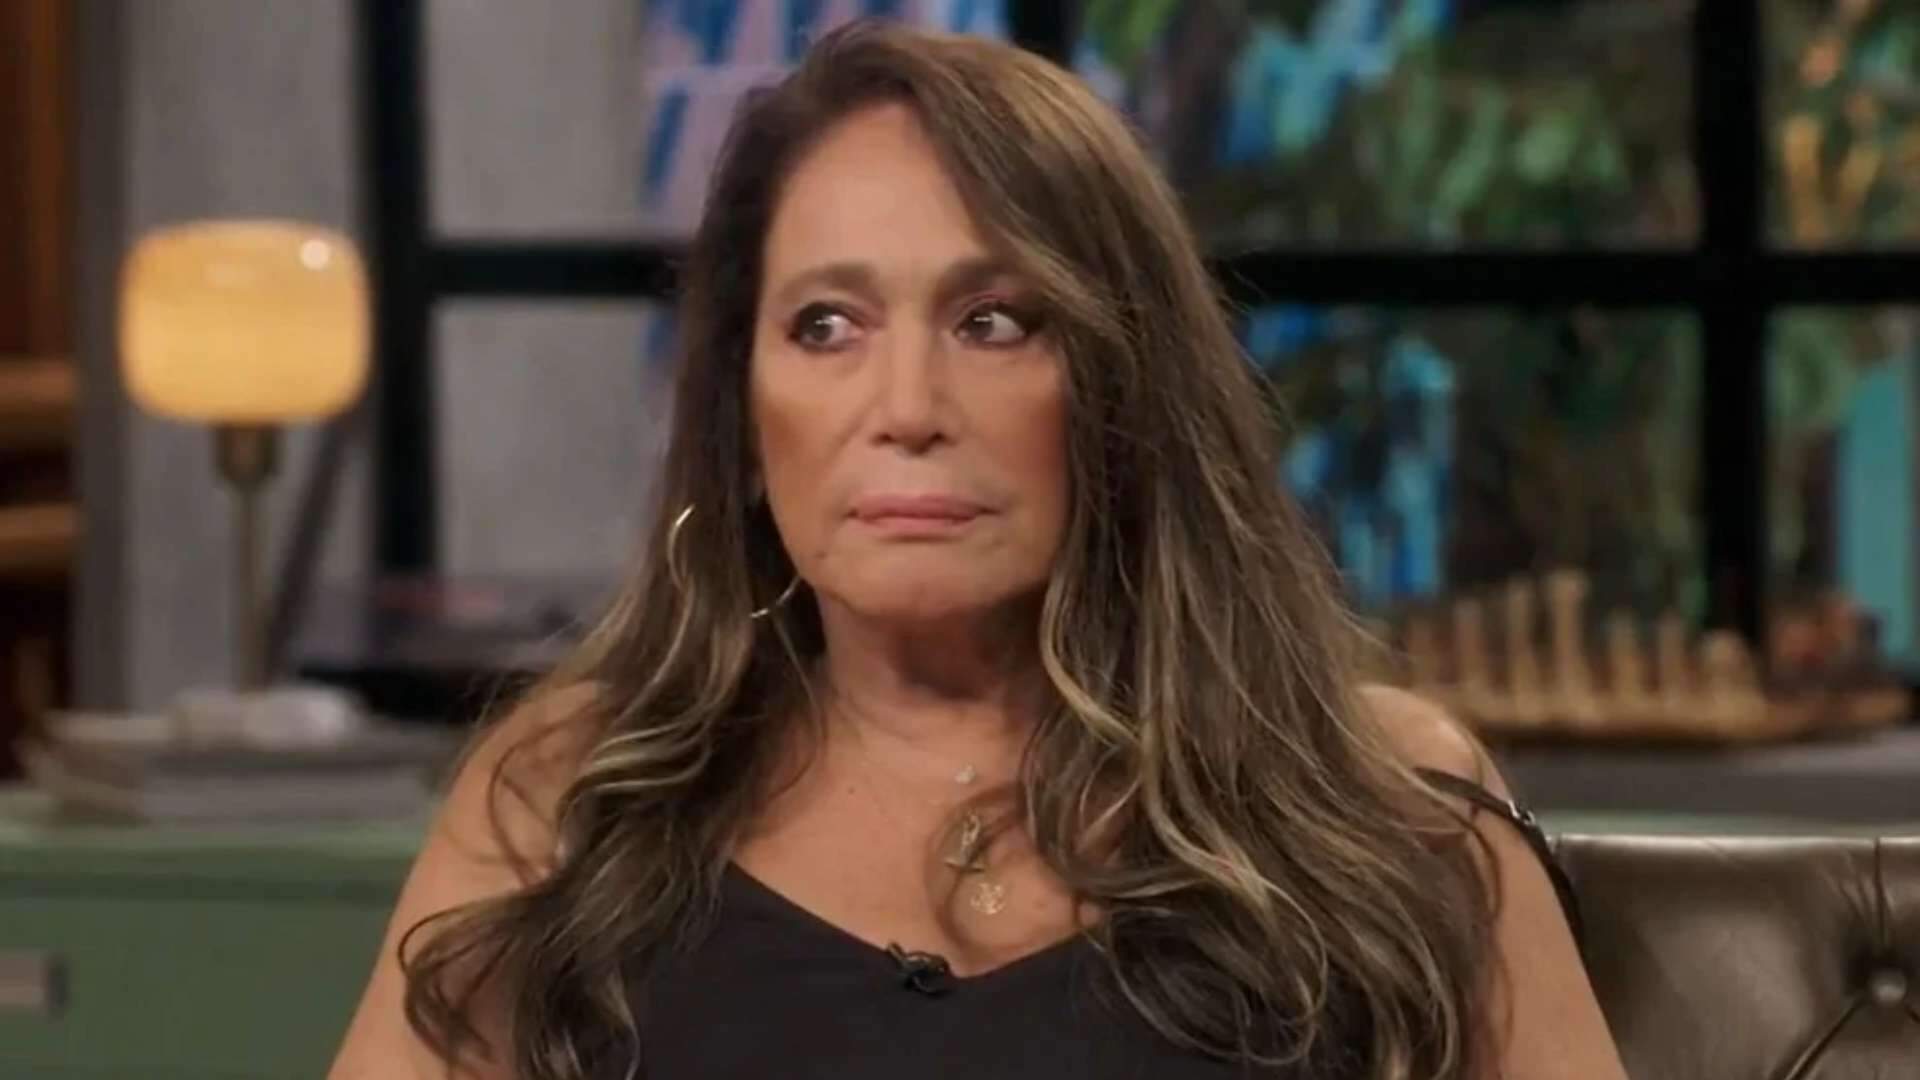 Susana Vieira expõe ex-marido que era diretor da Globo e faz revelações chocantes: “Me tirou da televisão”